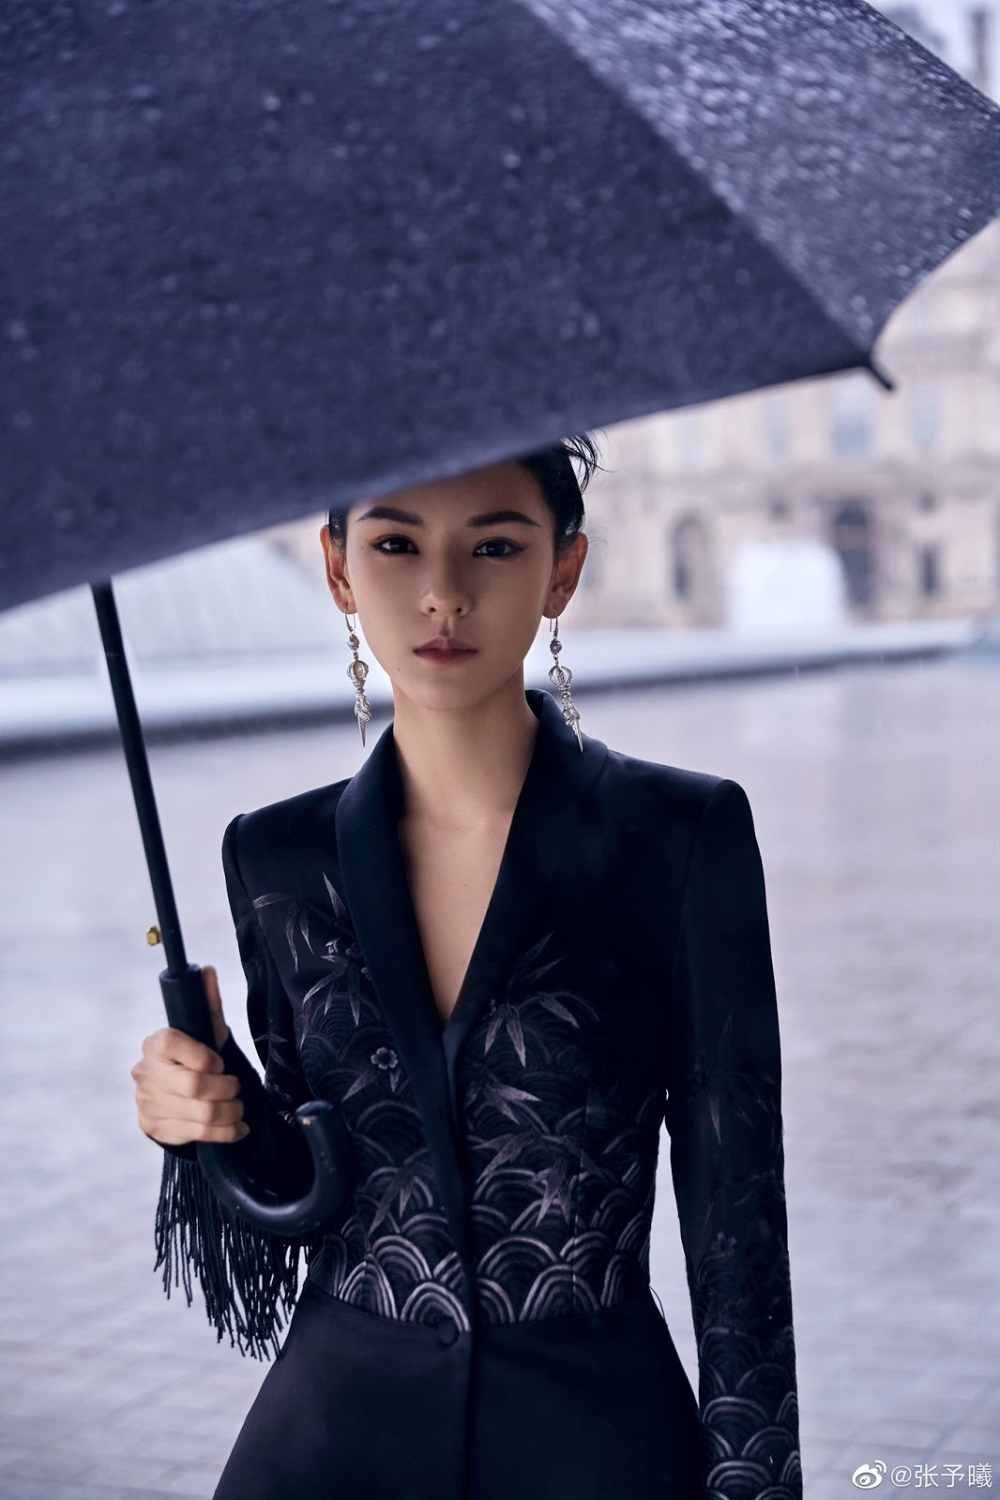 Zhang Yuxi in Paris for fashion week